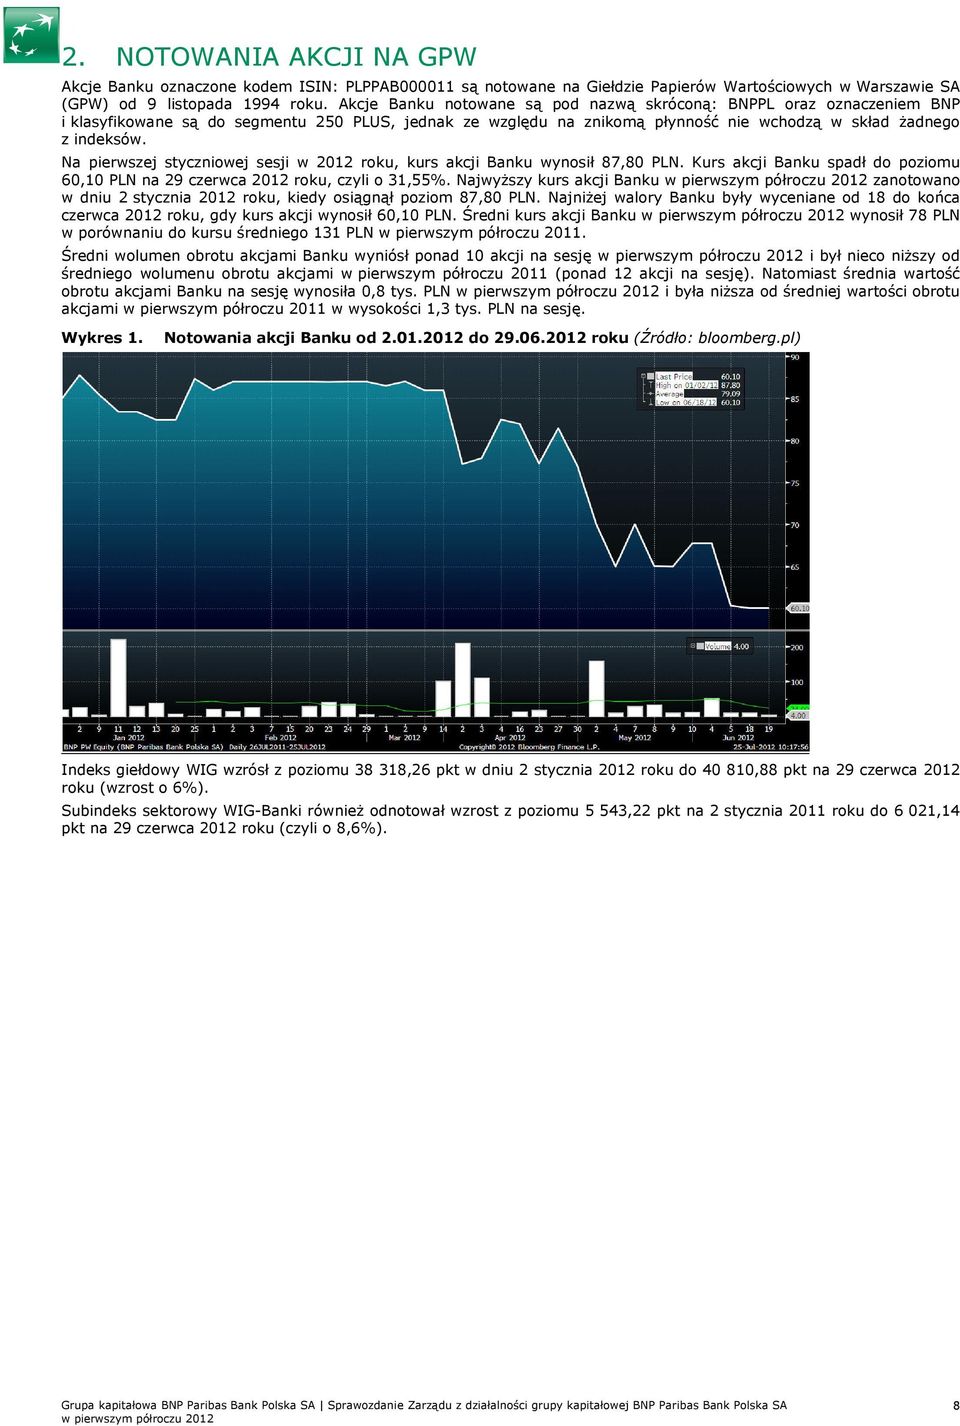 Na pierwszej styczniowej sesji w 2012 roku, kurs akcji Banku wynosił 87,80 PLN. Kurs akcji Banku spadł do poziomu 60,10 PLN na 29 czerwca 2012 roku, czyli o 31,55%.